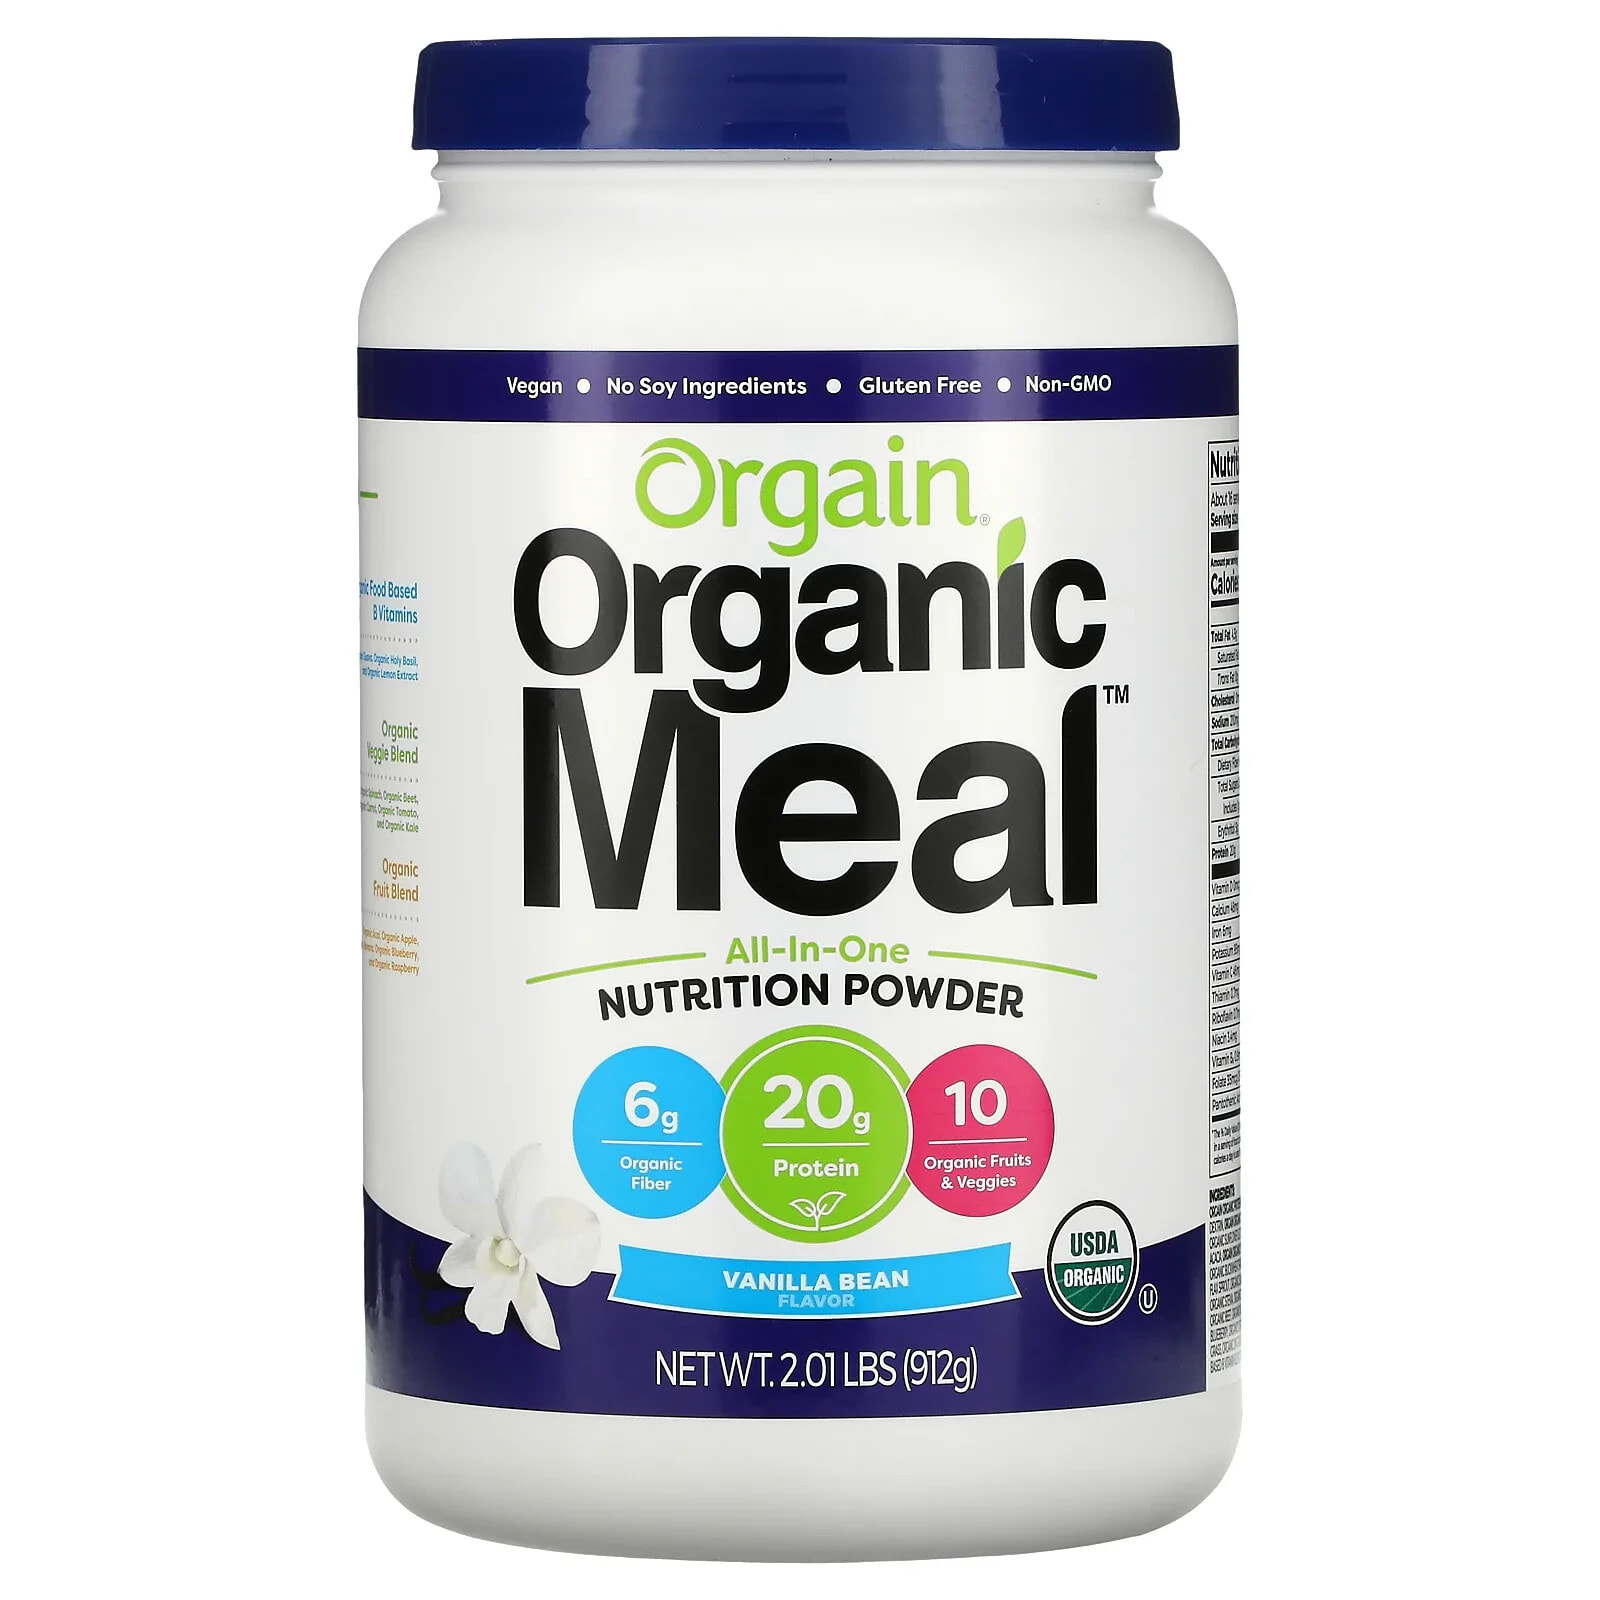 Orgain, Organic Meal, универсальный пищевой порошок, сливочная шоколадная помадка, 912 г (2,01 фунта)